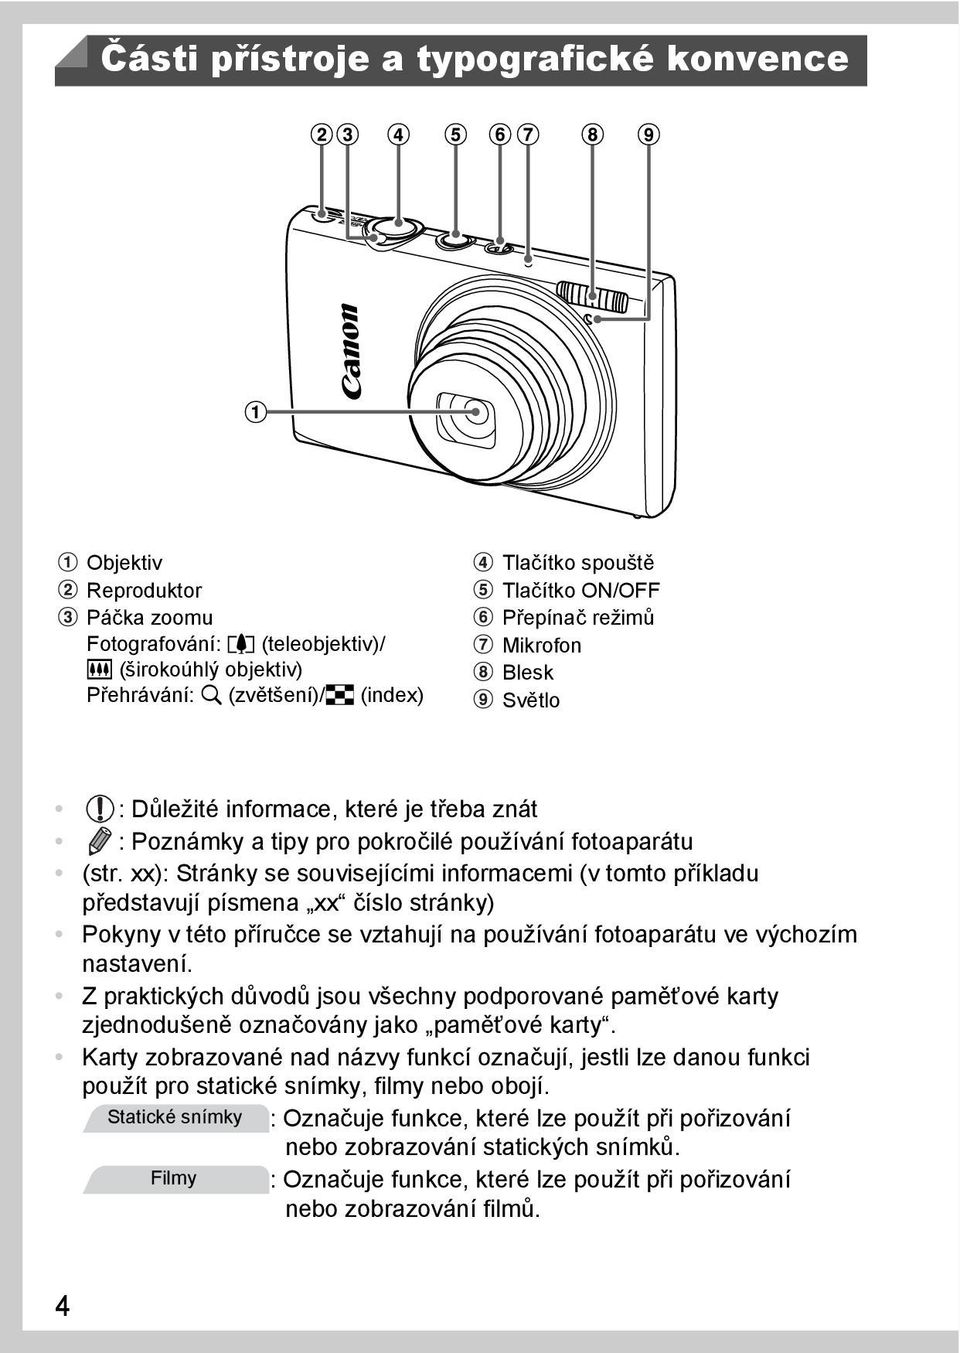 xx): Stránky se souvisejícími informacemi (v tomto příkladu představují písmena xx číslo stránky) Pokyny v této příručce se vztahují na používání fotoaparátu ve výchozím nastavení.